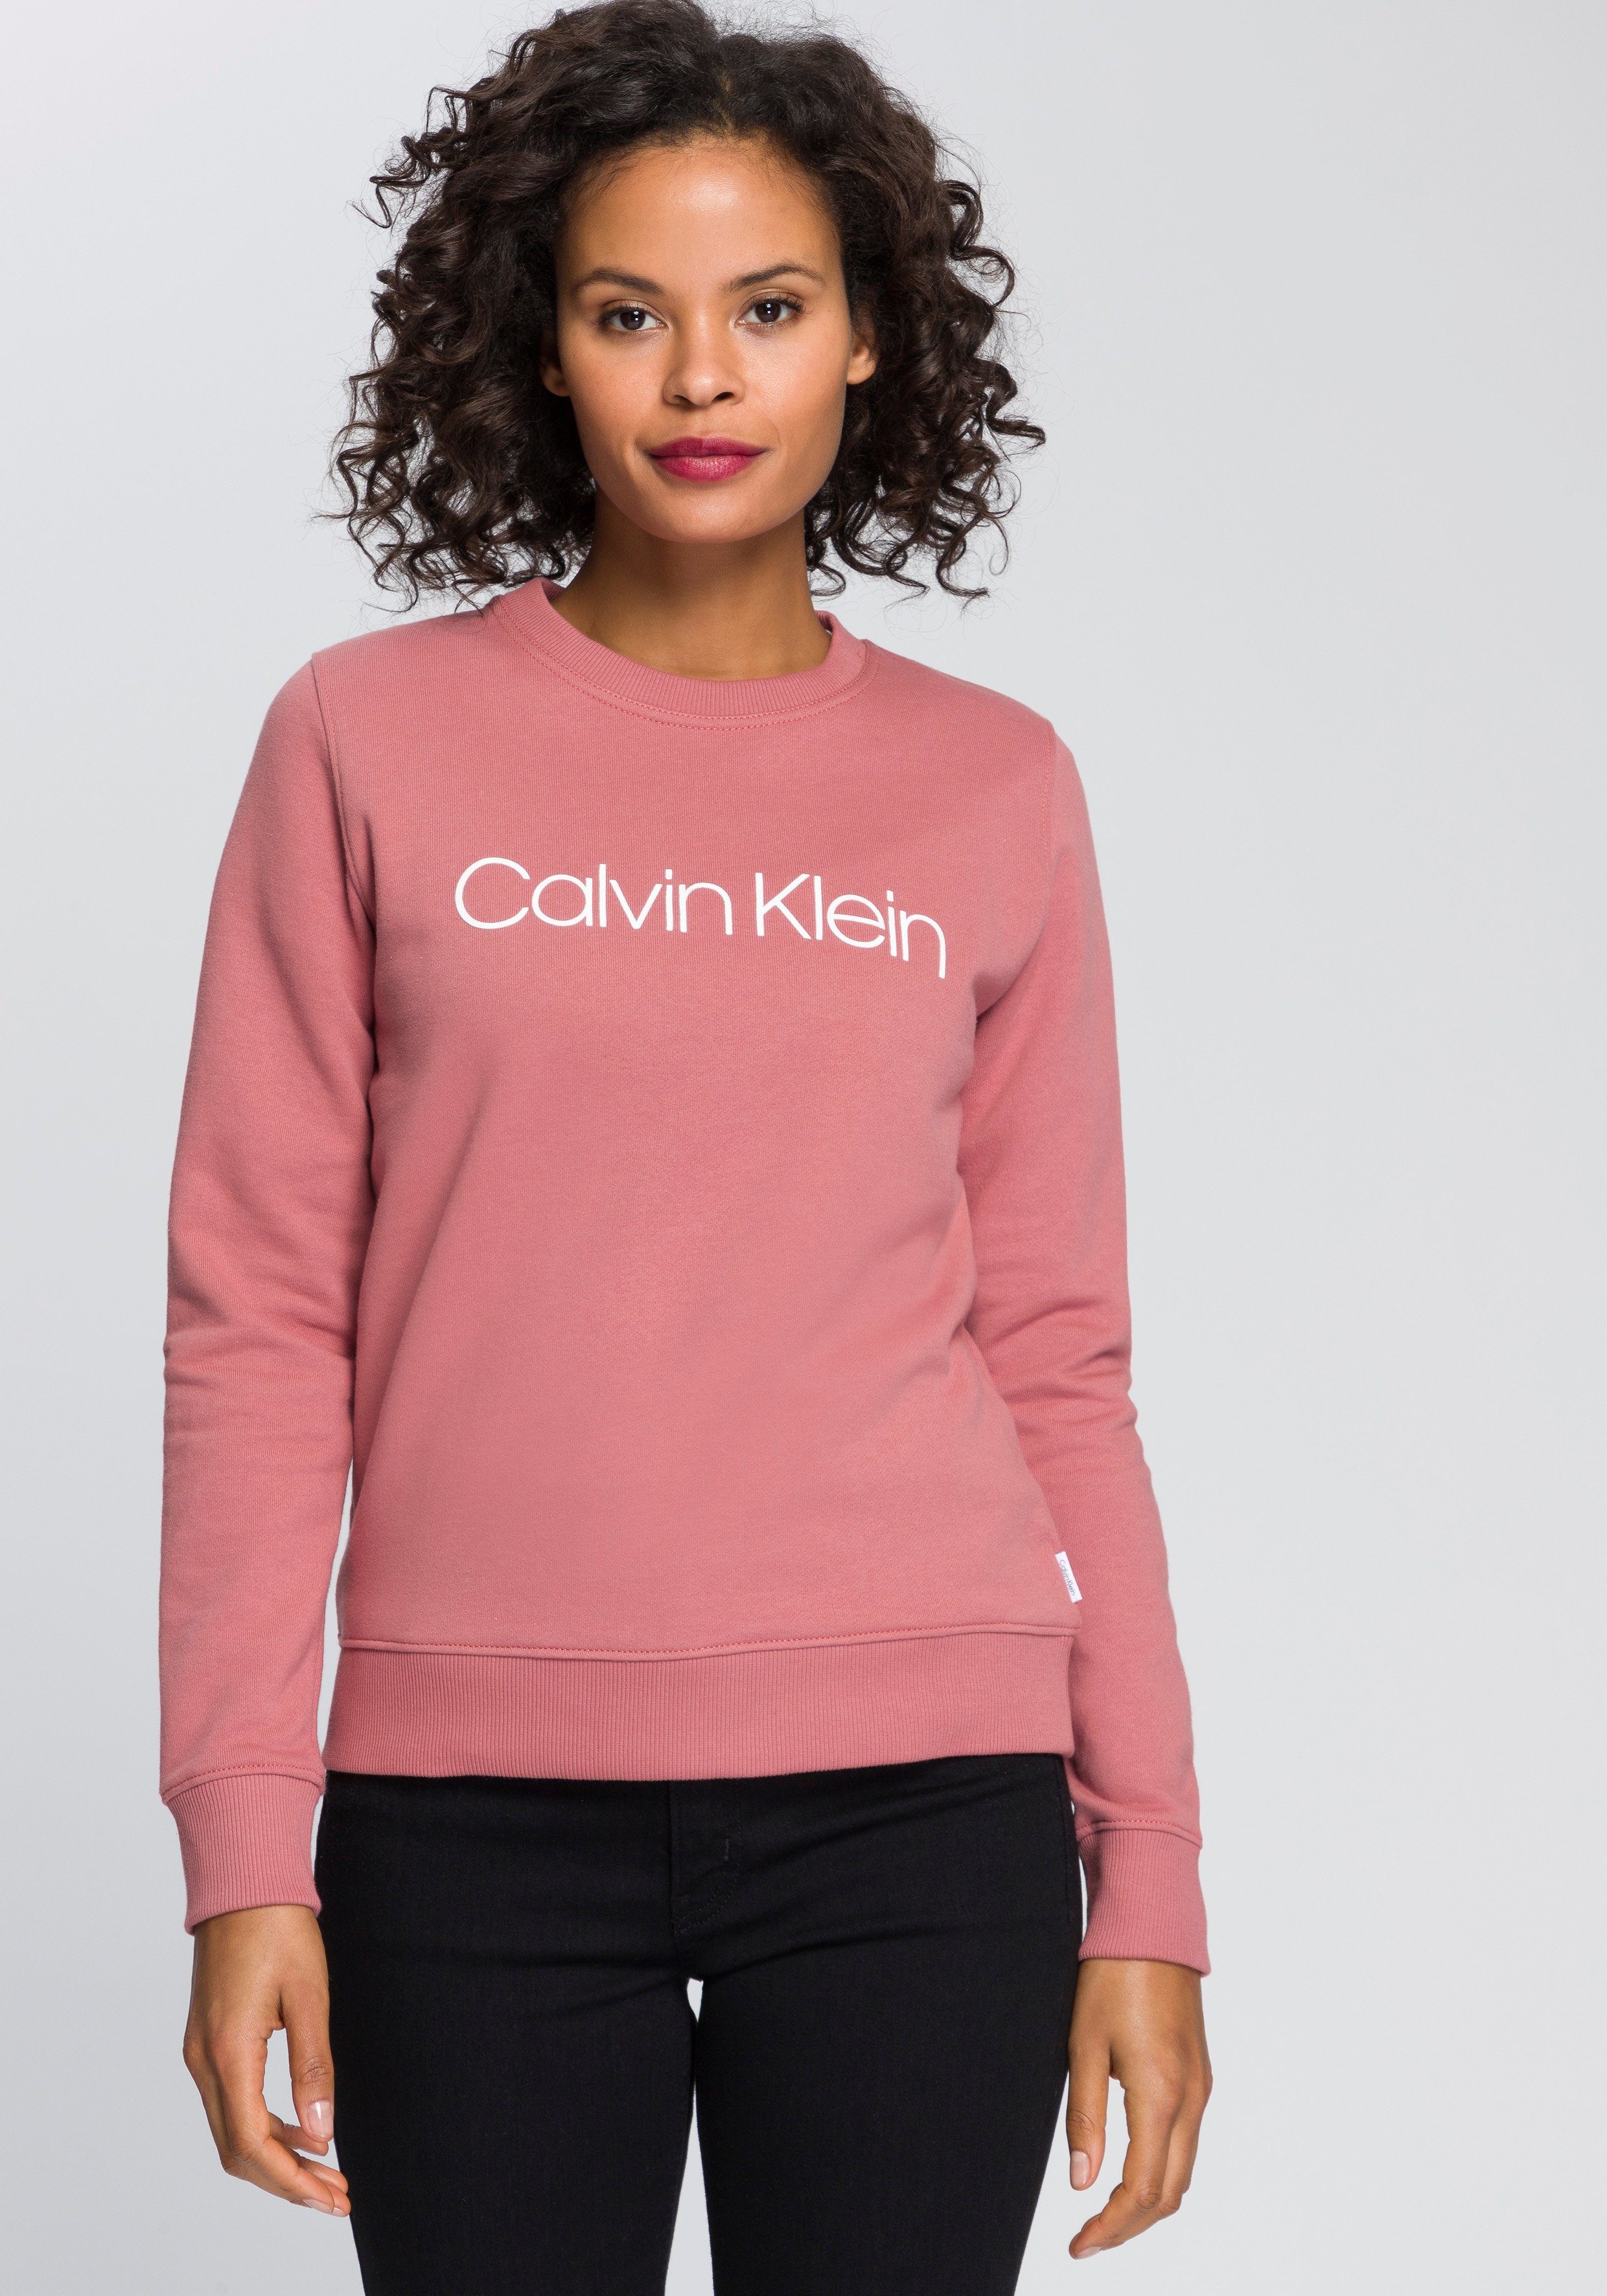 voorkomen walvis boete Calvin Klein Damen Online-Shop | OTTO